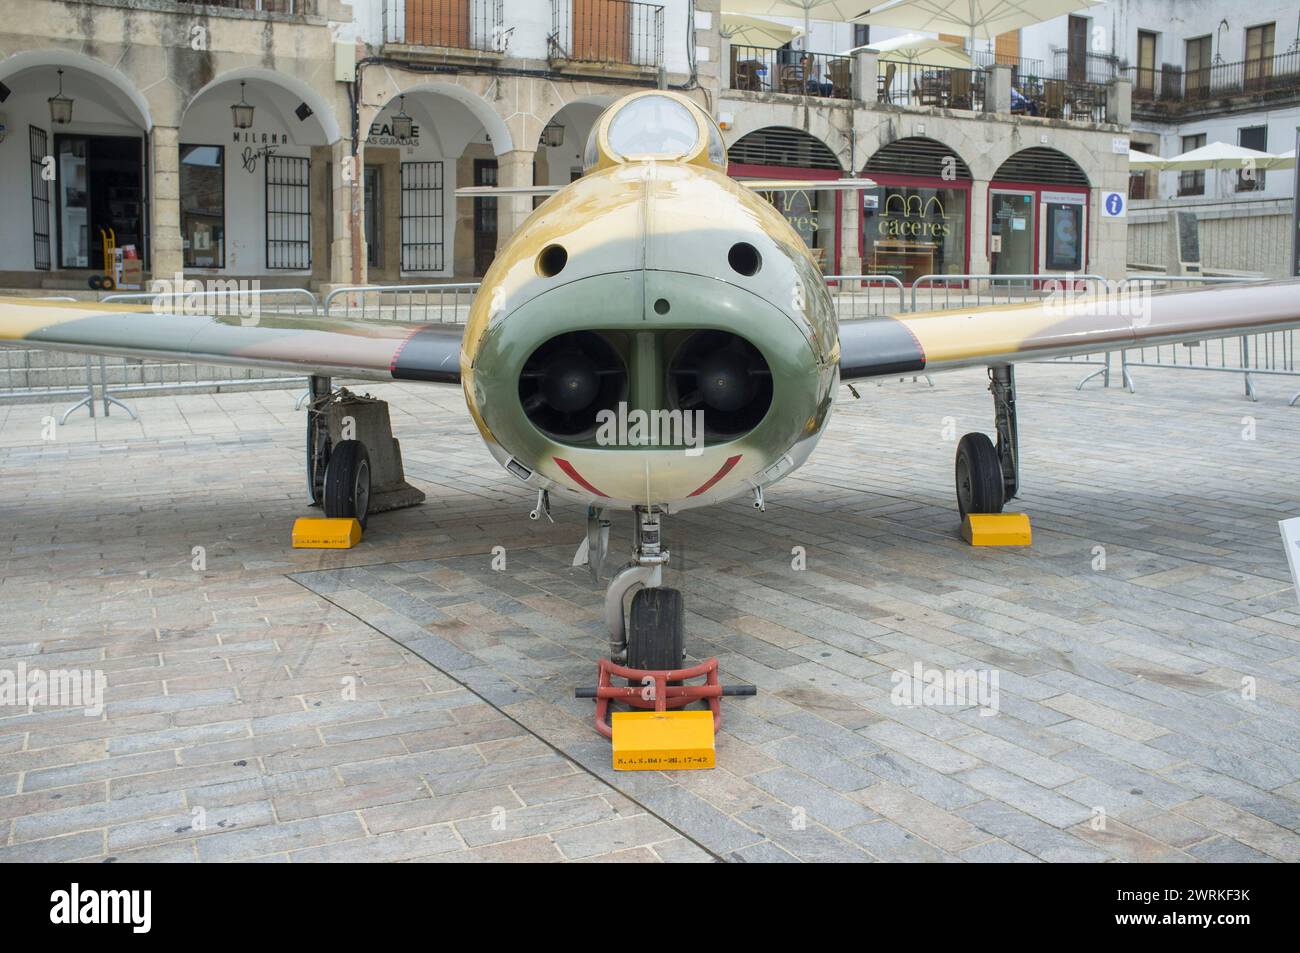 Caceres, Spain - May 27th, 2021: Hispano HA-200 Saeta. Spanish military aviation exhibition, Caceres Main Square, Spain Stock Photo